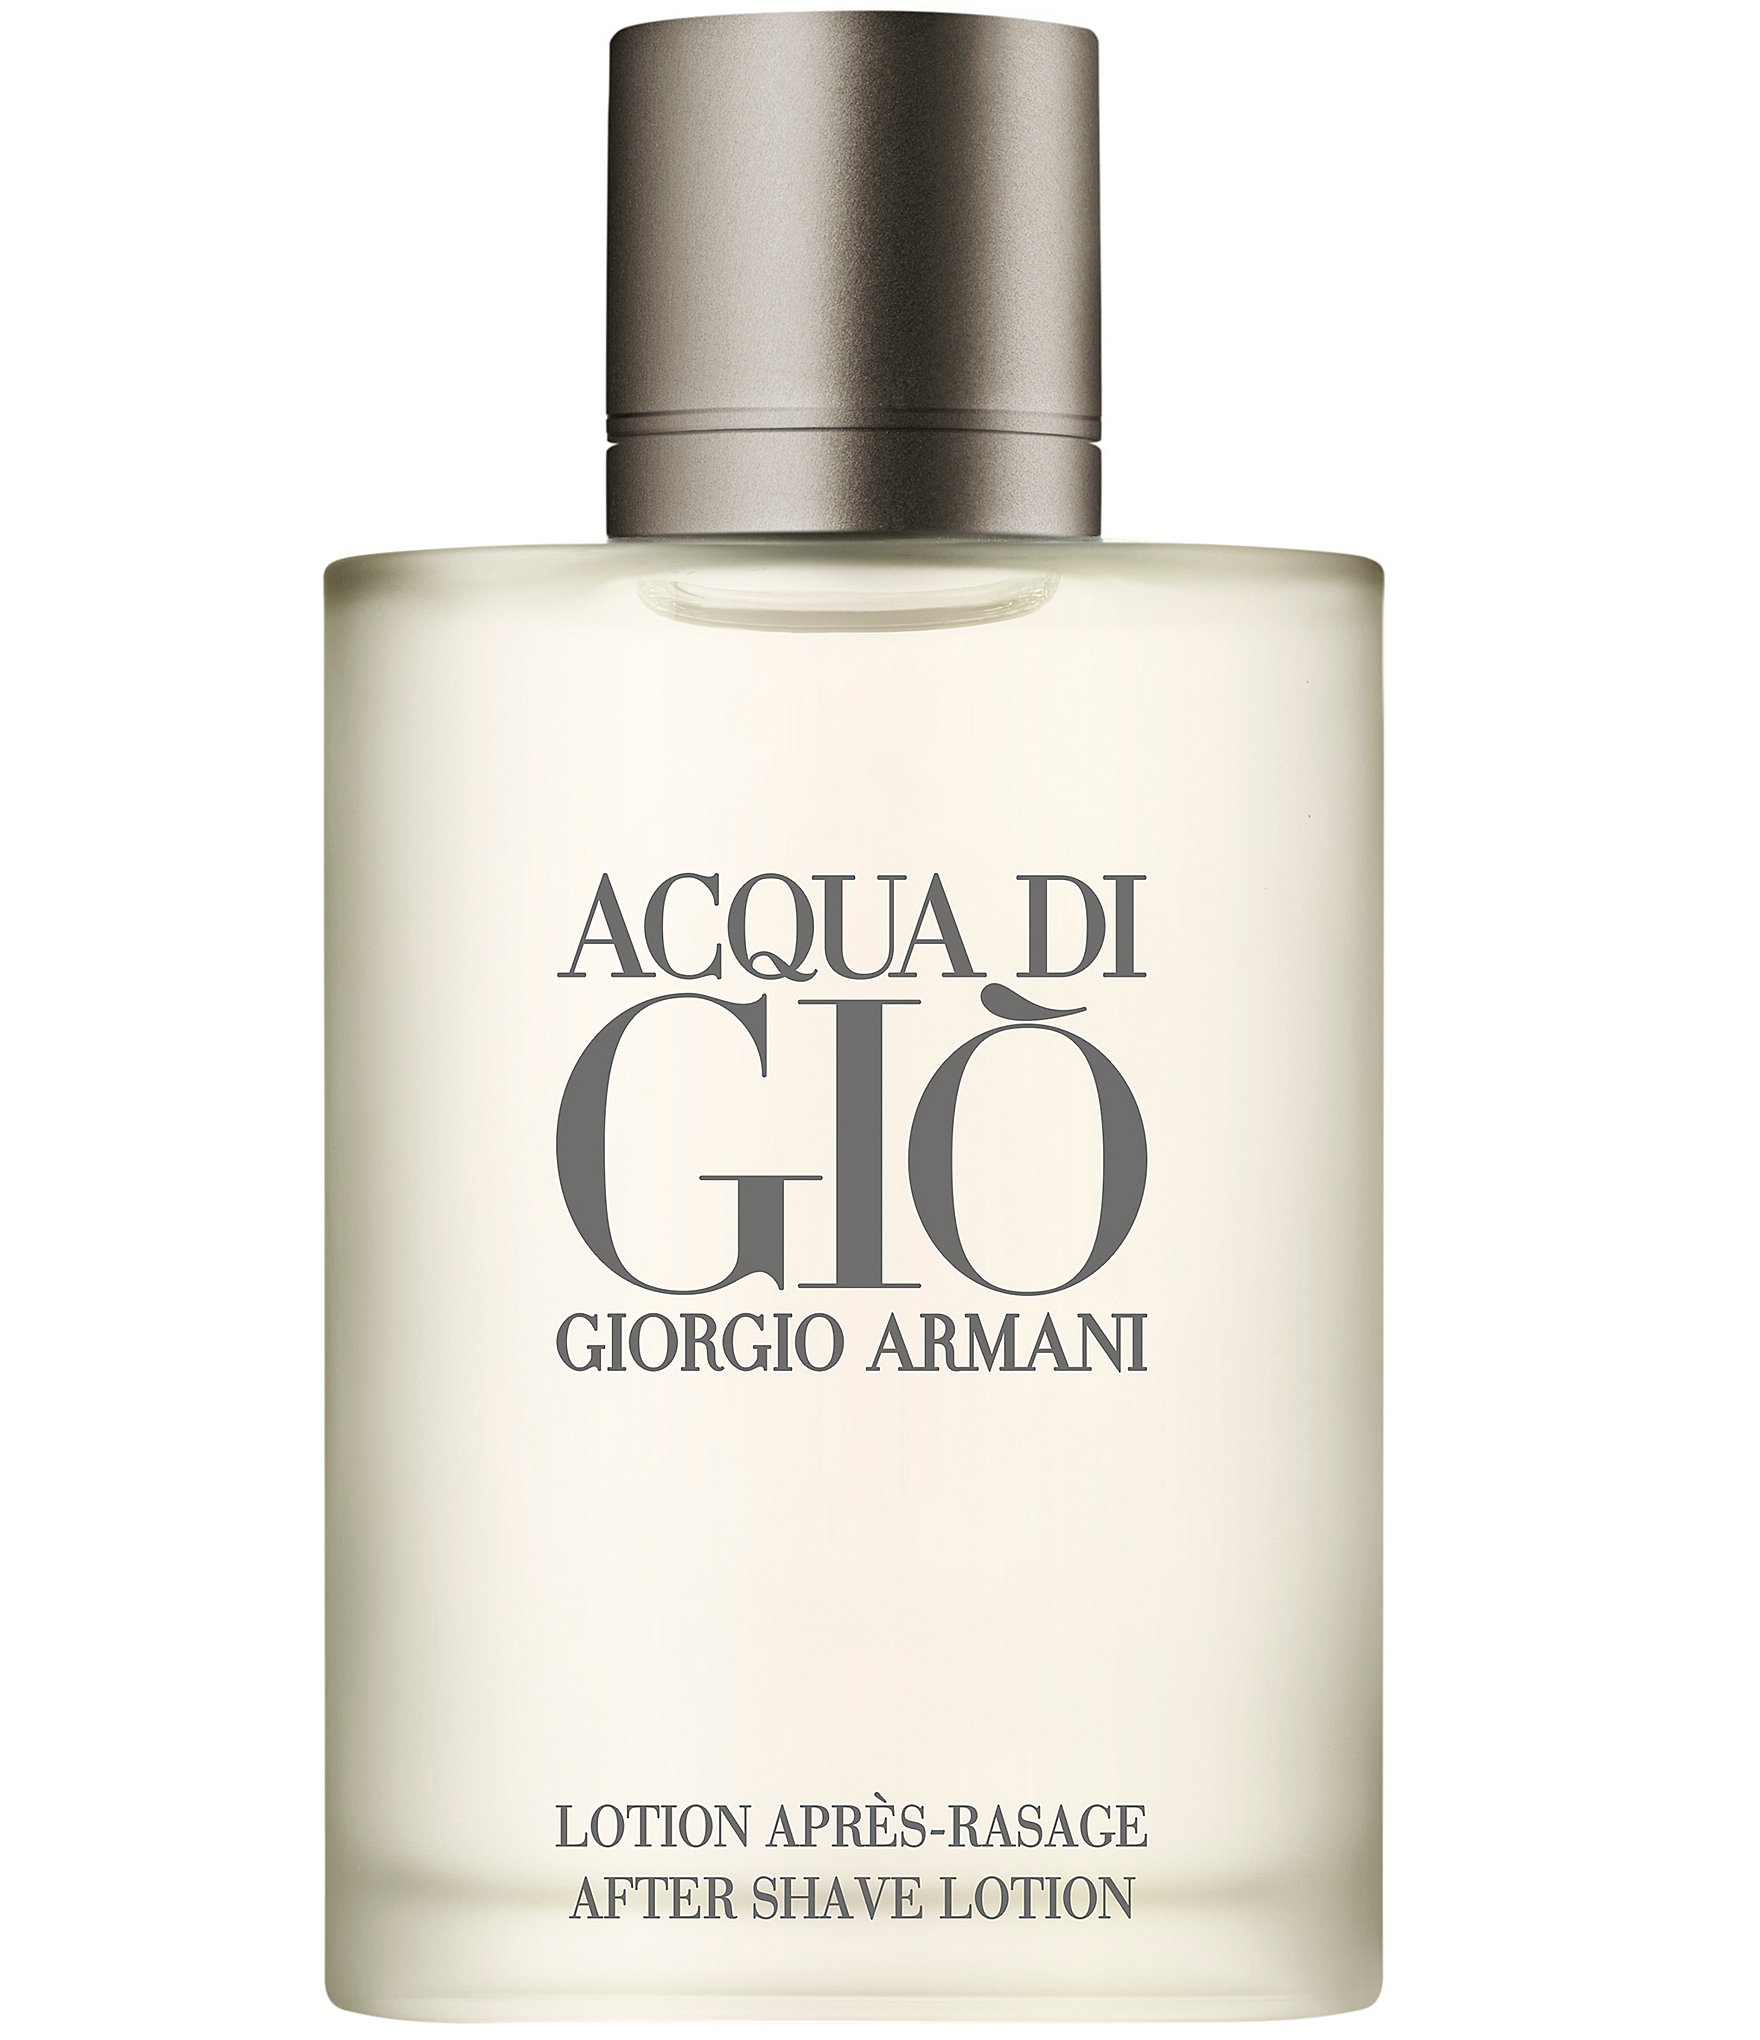 Vandre Gå ud tør Giorgio Armani ARMANI beauty Acqua di Gio After Shave Lotion | Dillard's